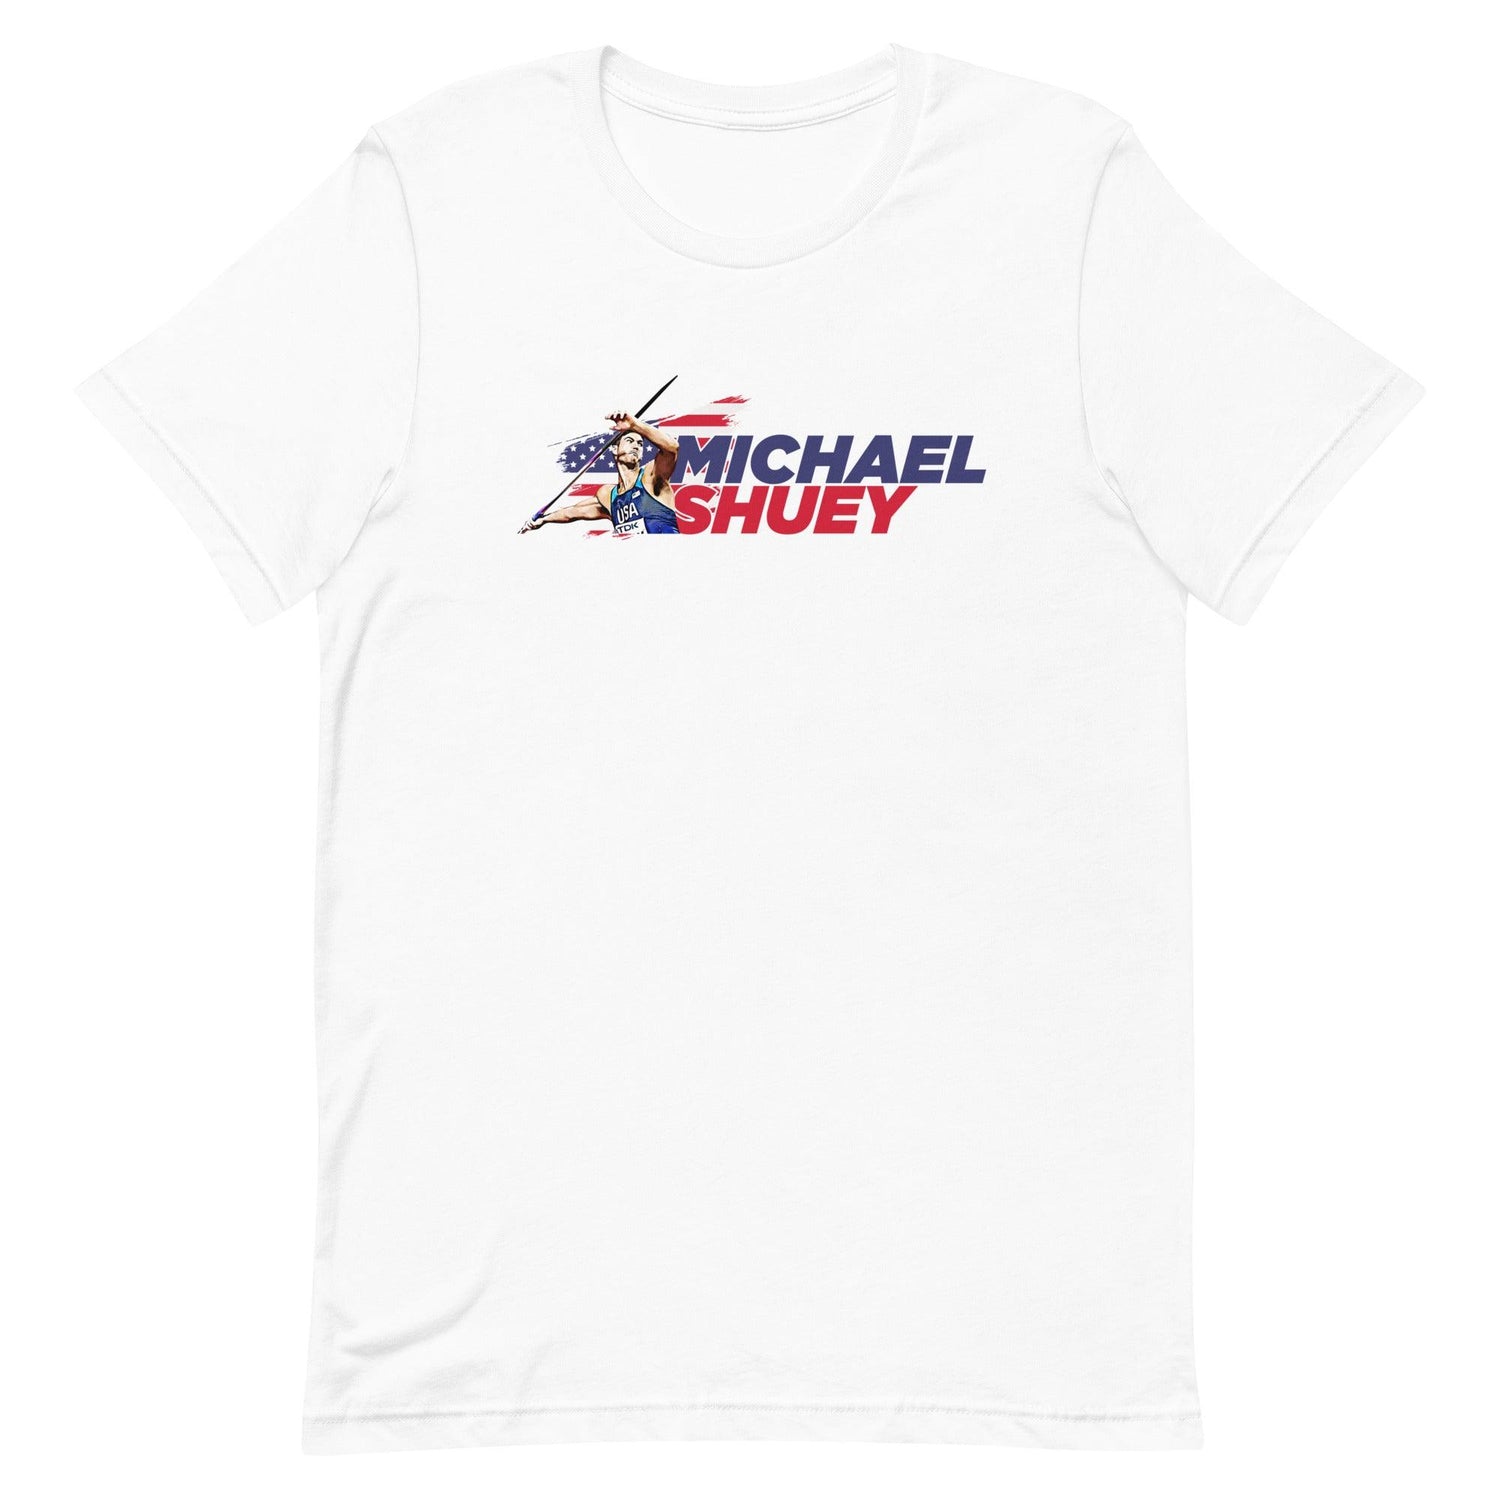 Michael Shuey “Essential” t-shirt - Fan Arch